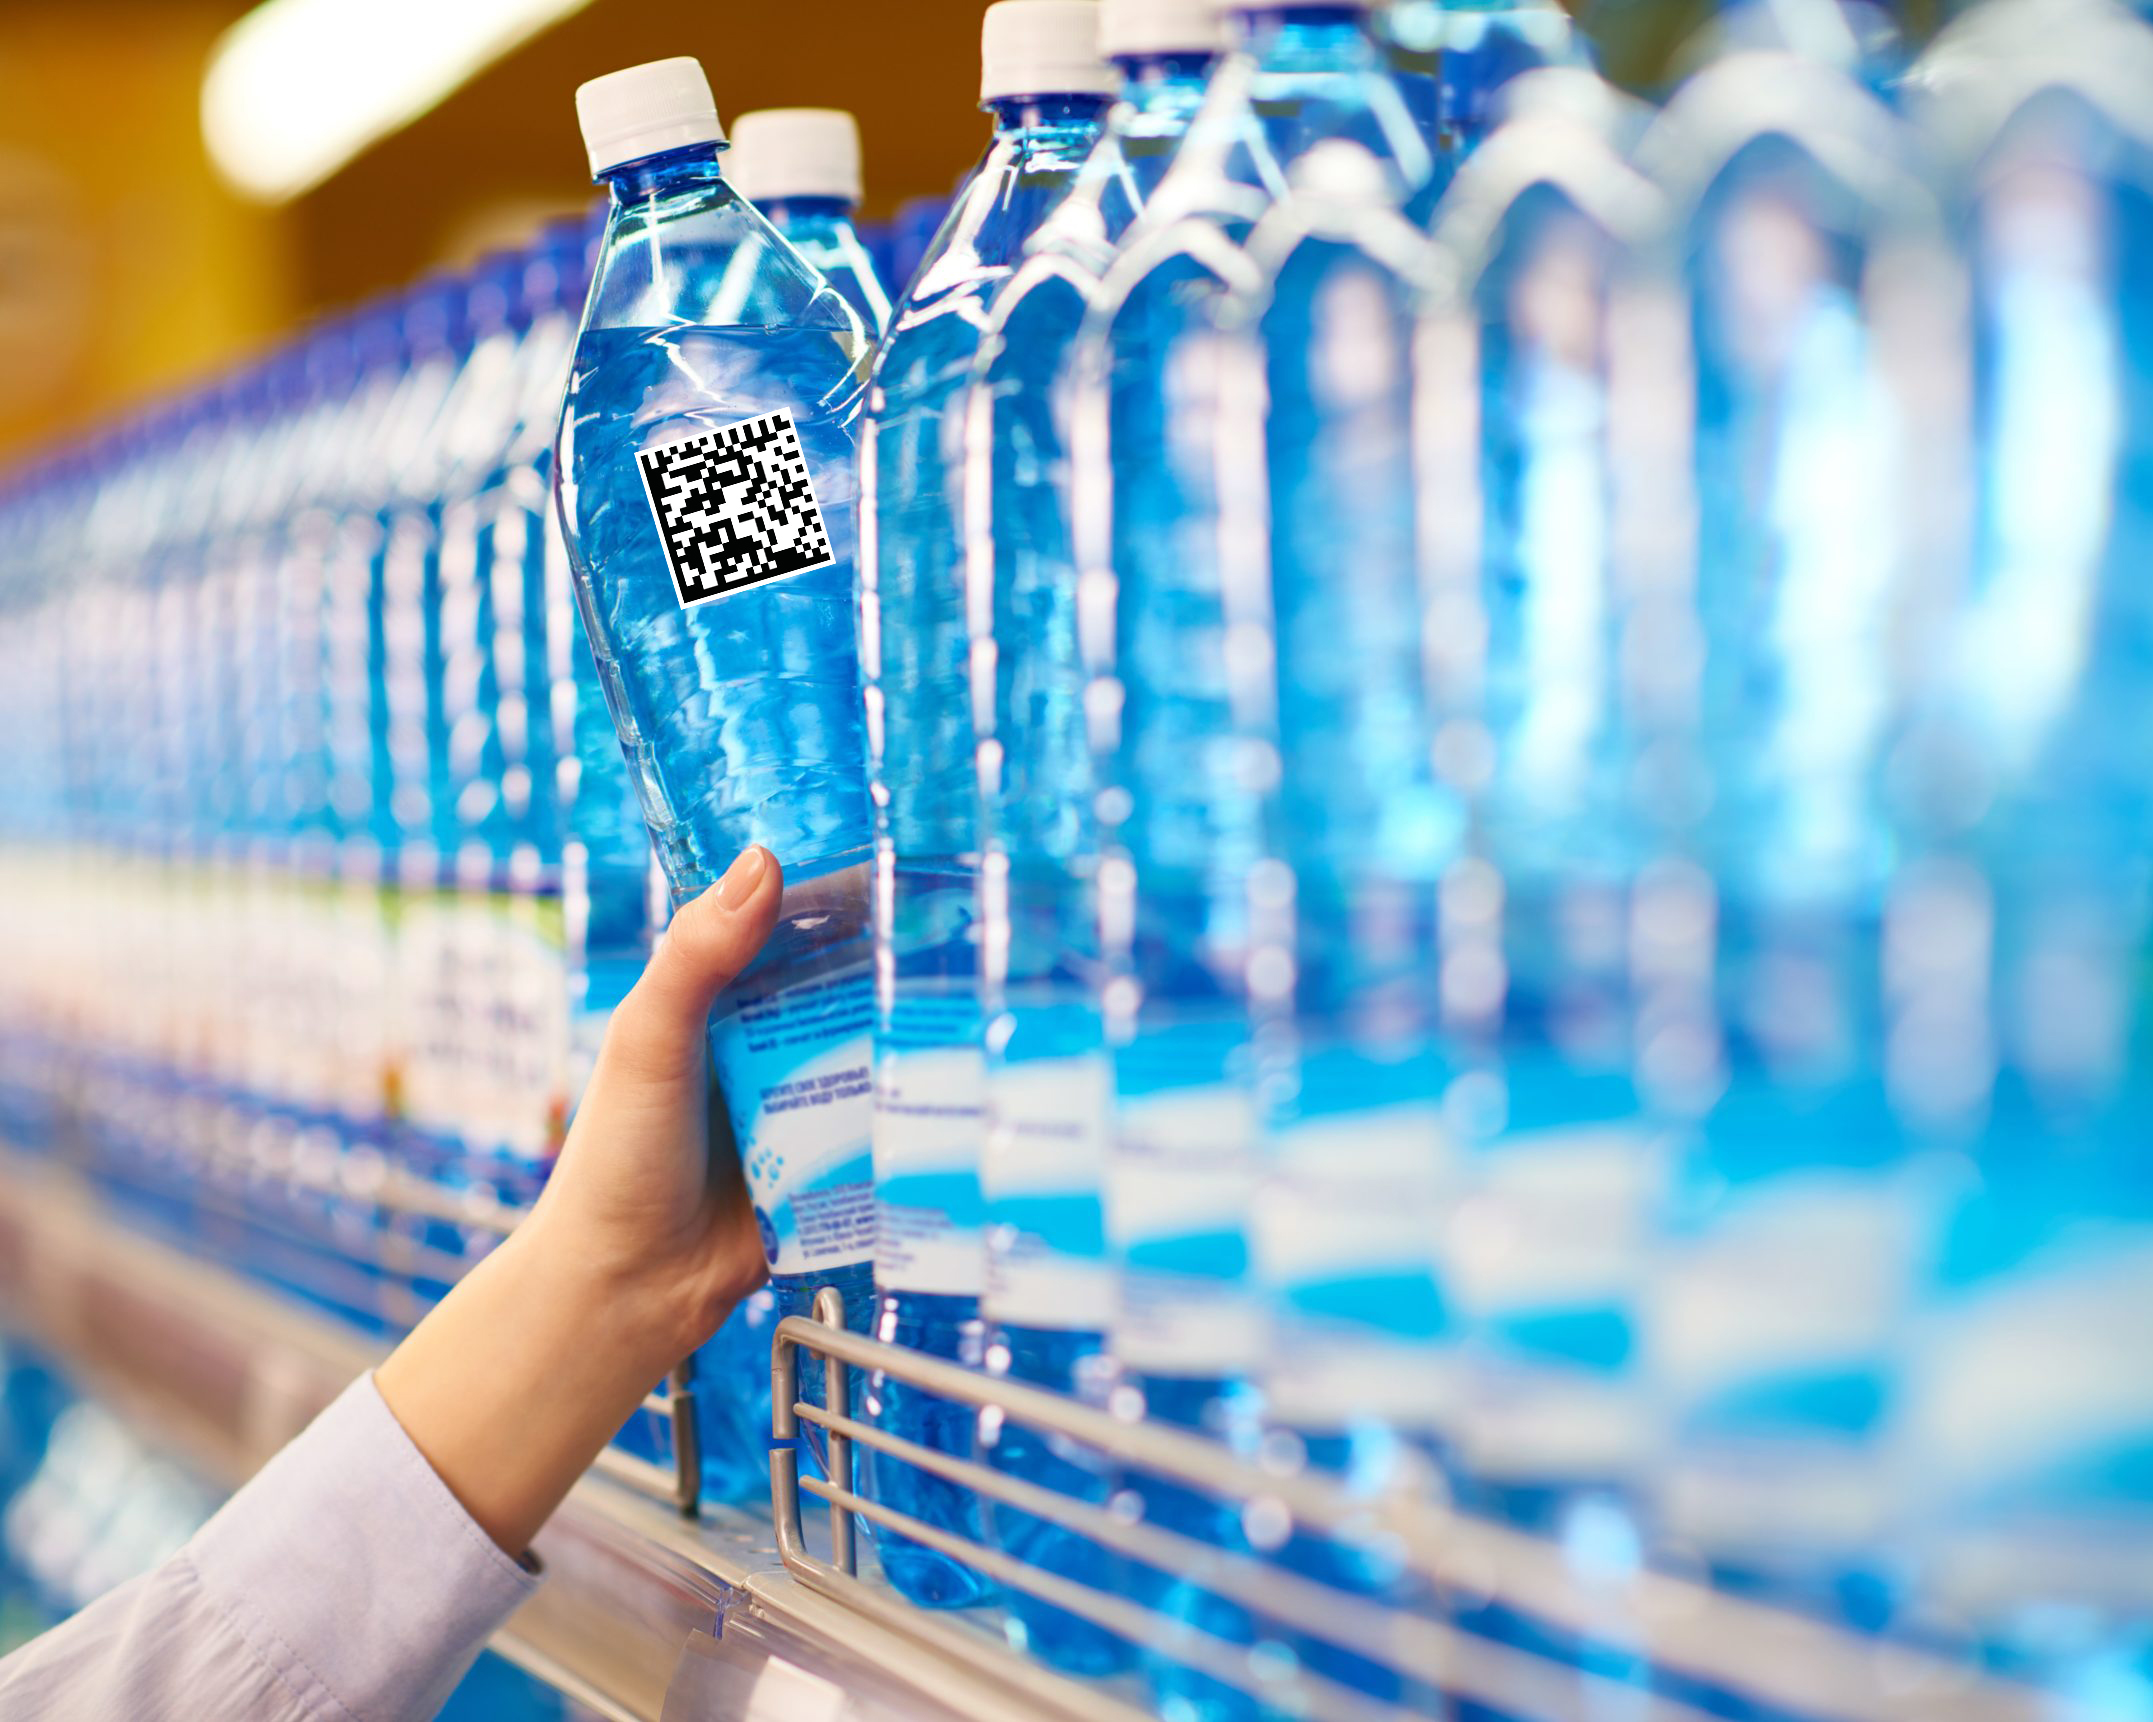 Продажа воды в бутылках. Вода питьевая бутилированная. Бутилированная минеральная вода. Бутылка для воды. Пластиковые бутылки в магазине.